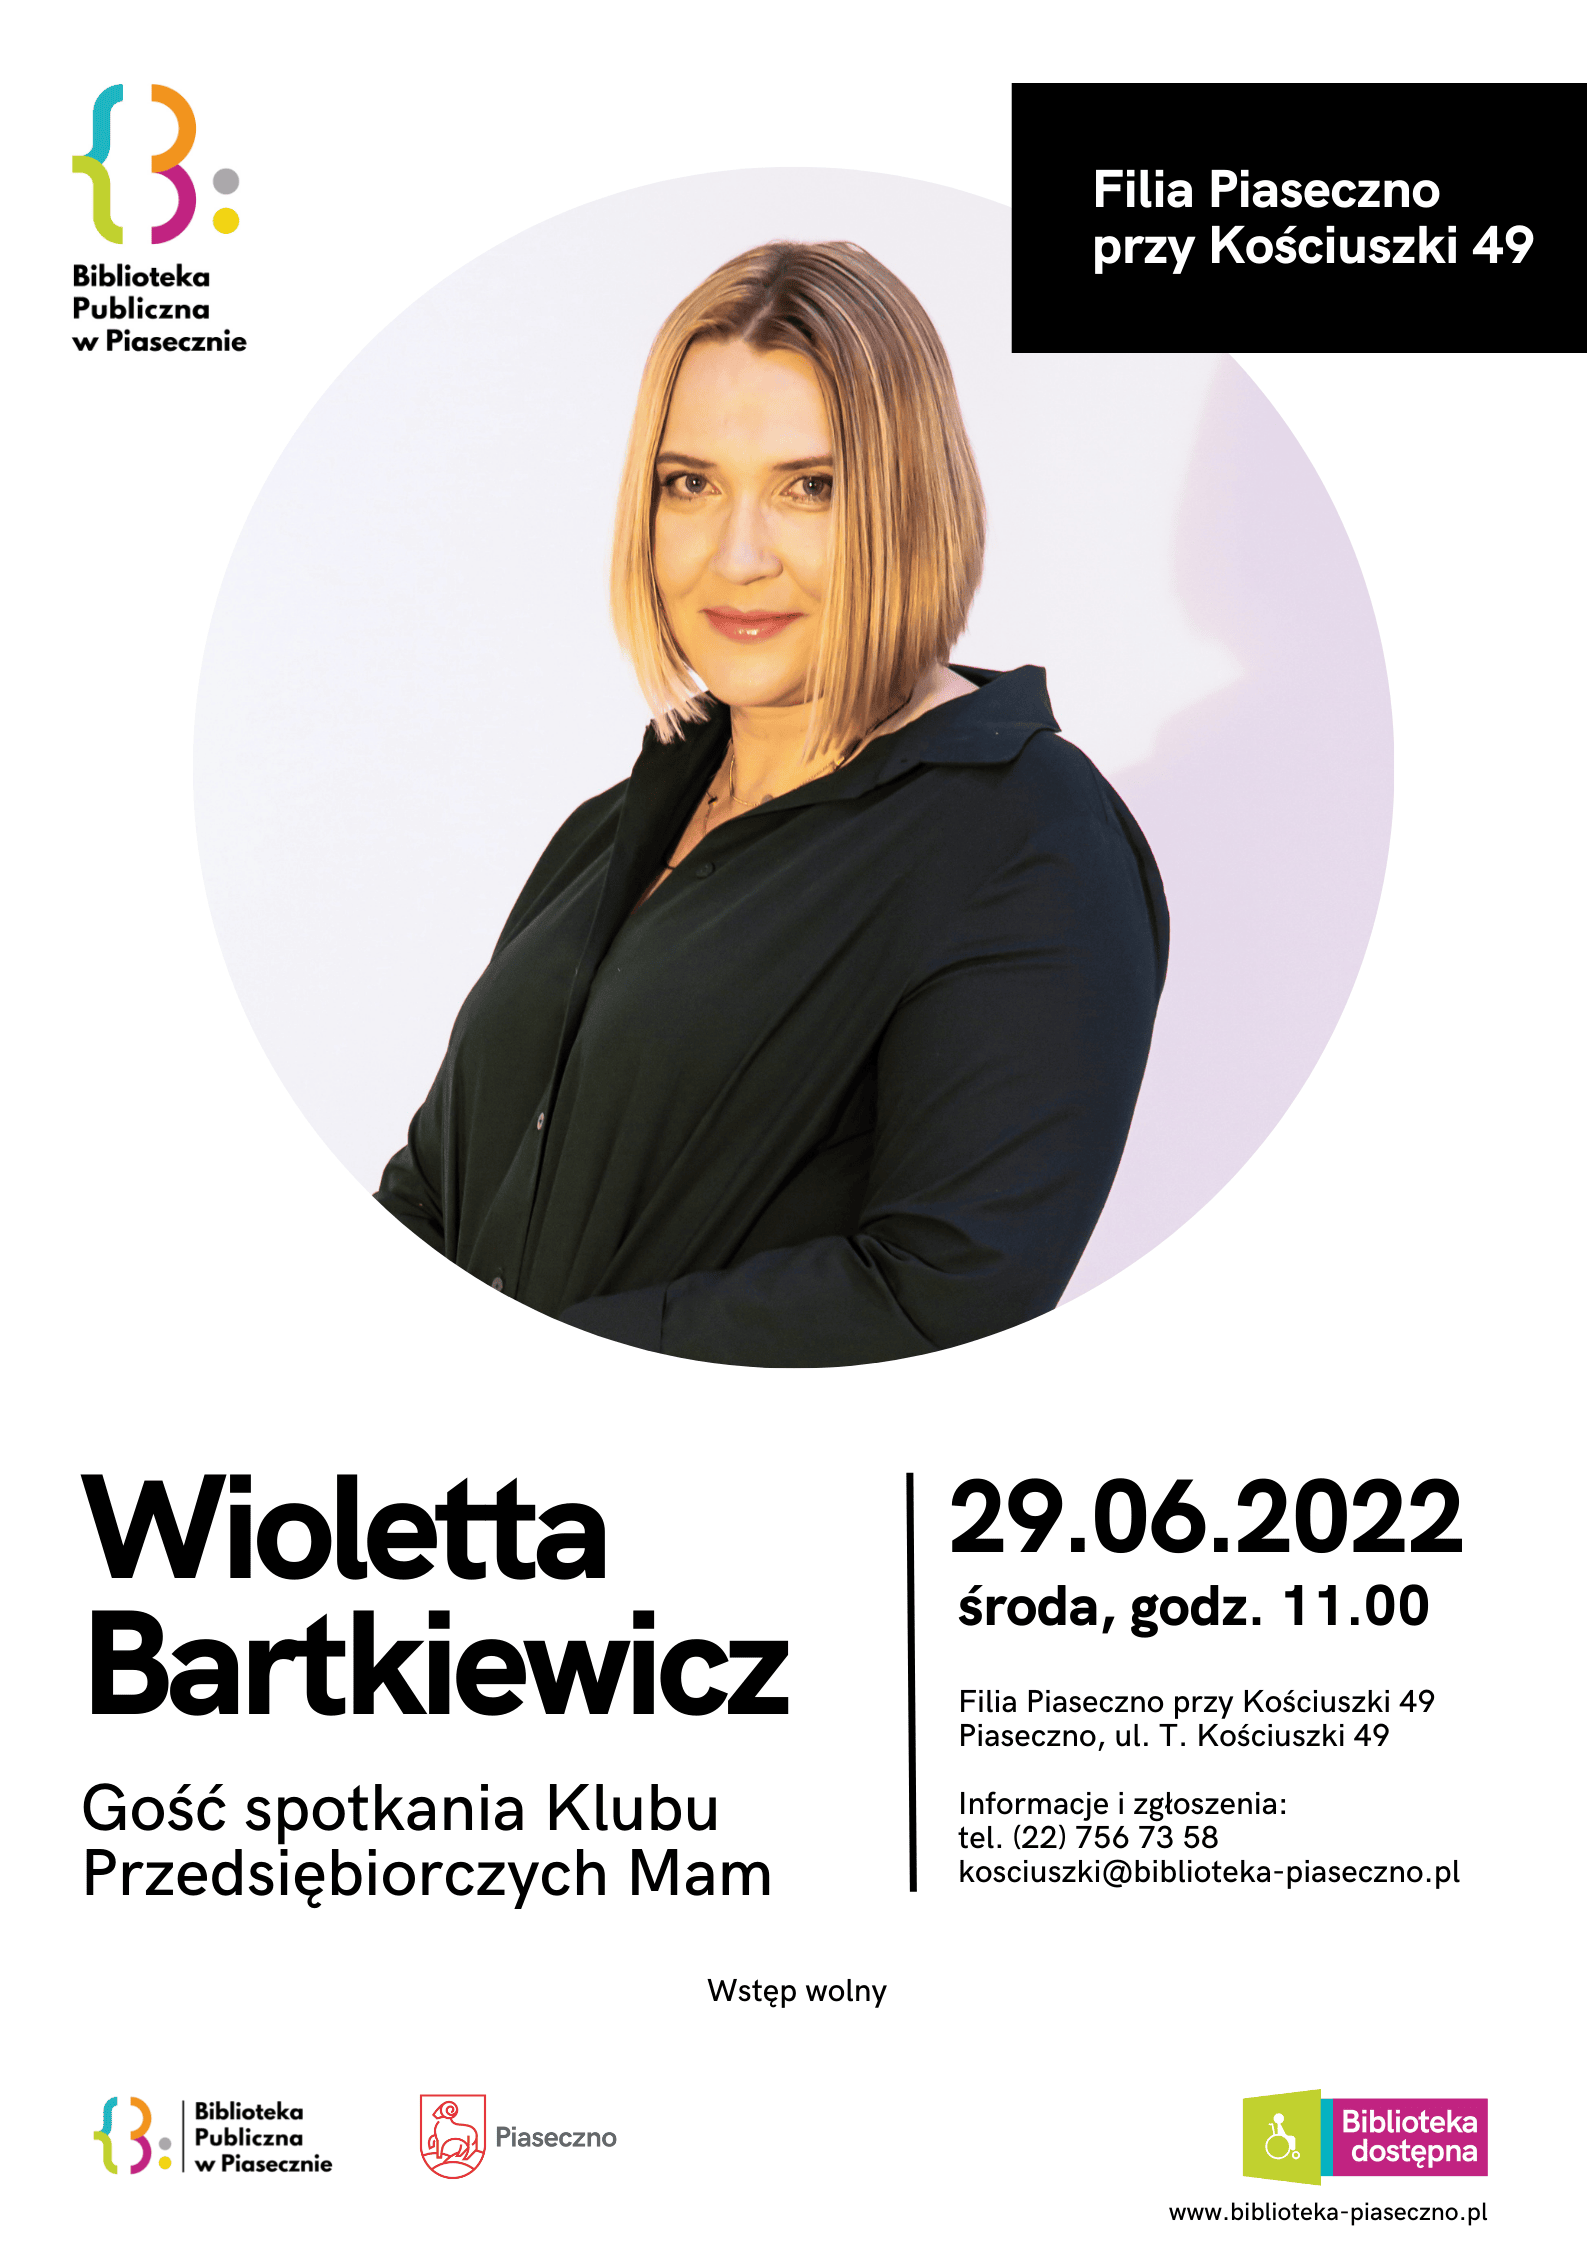 Wioletta Bartkiewicz